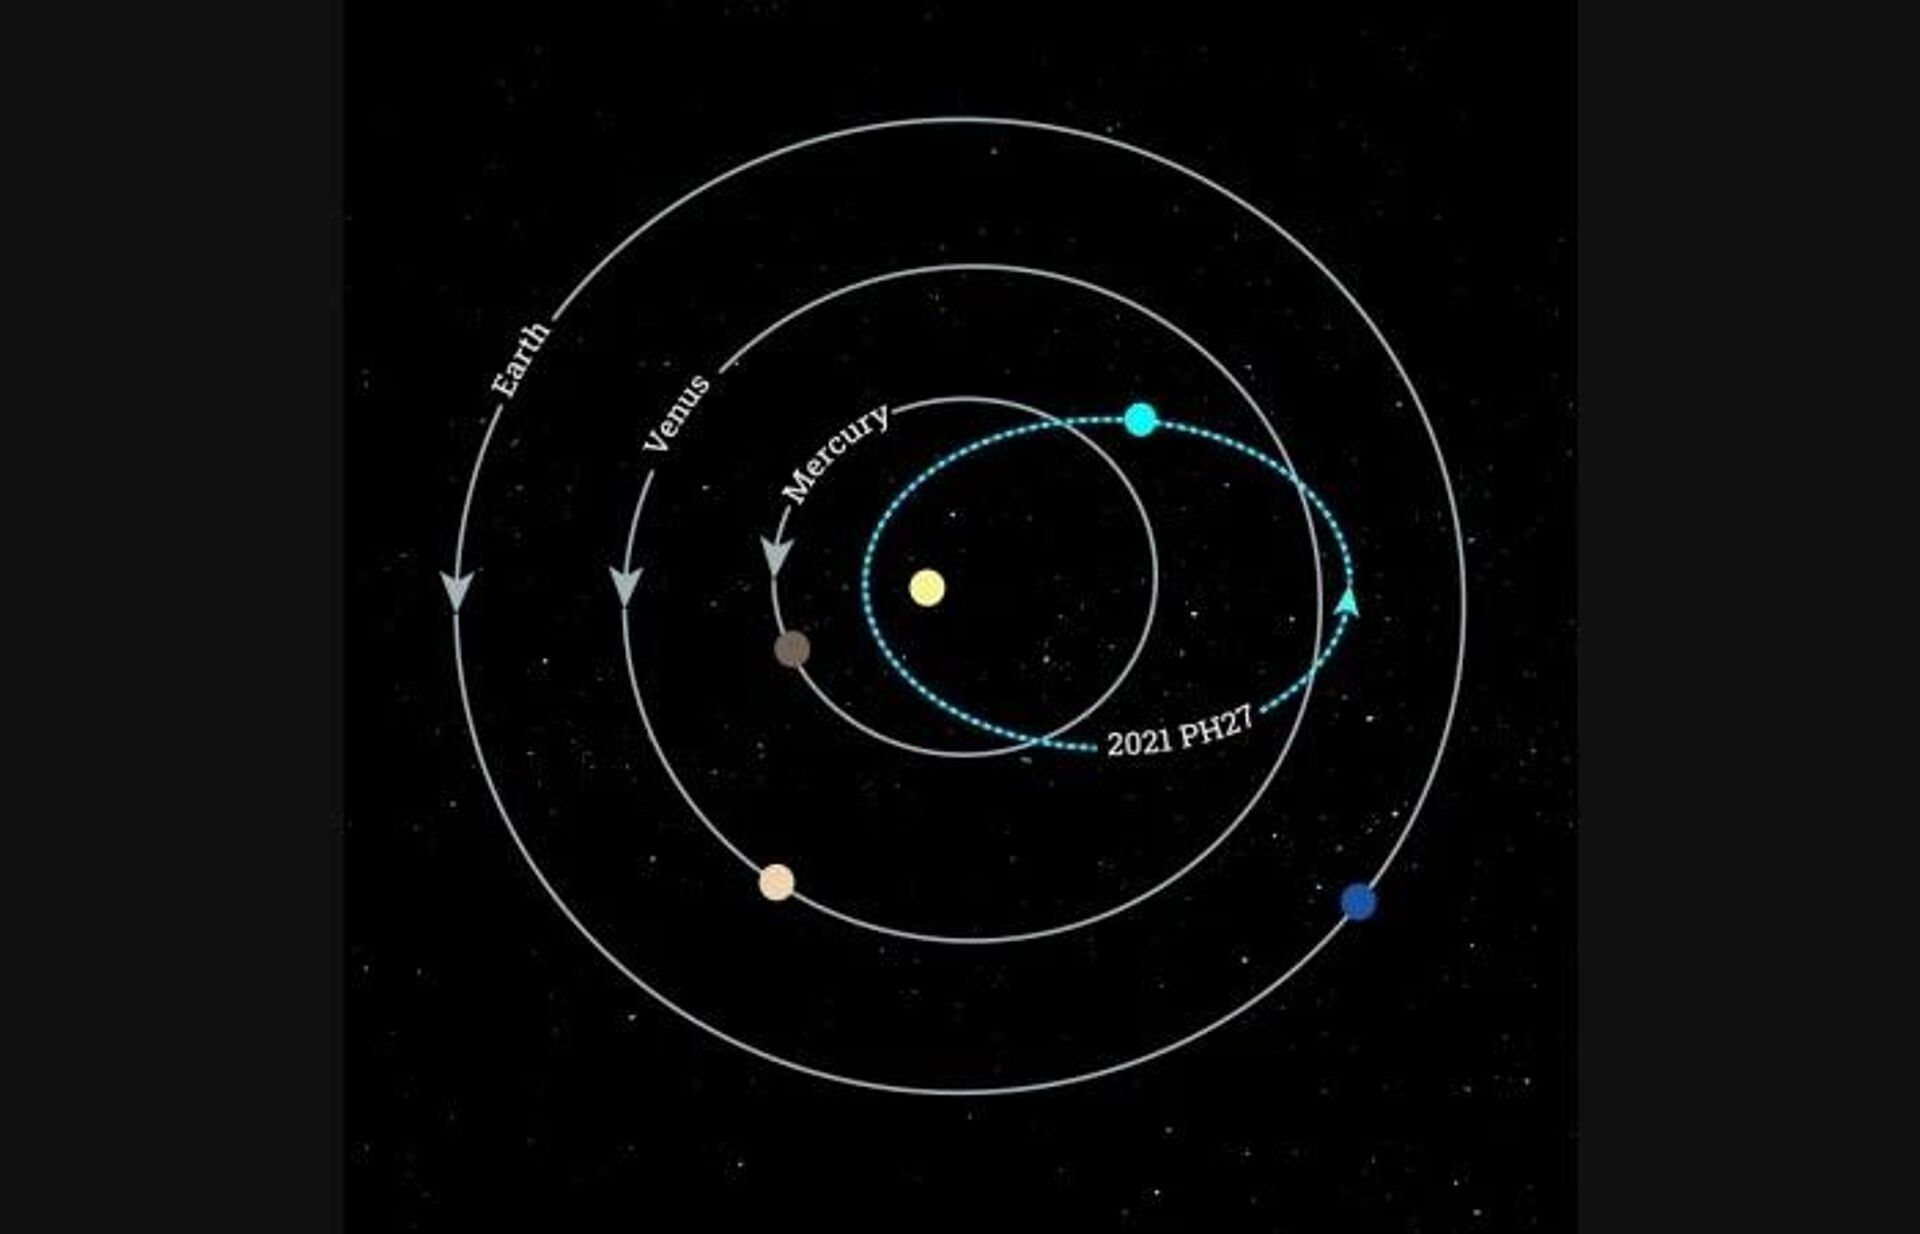 Güneş Sistemi'nde yörüngede en hızlı dönen asteroit 2021 PH27 - Sputnik Türkiye, 1920, 24.08.2021